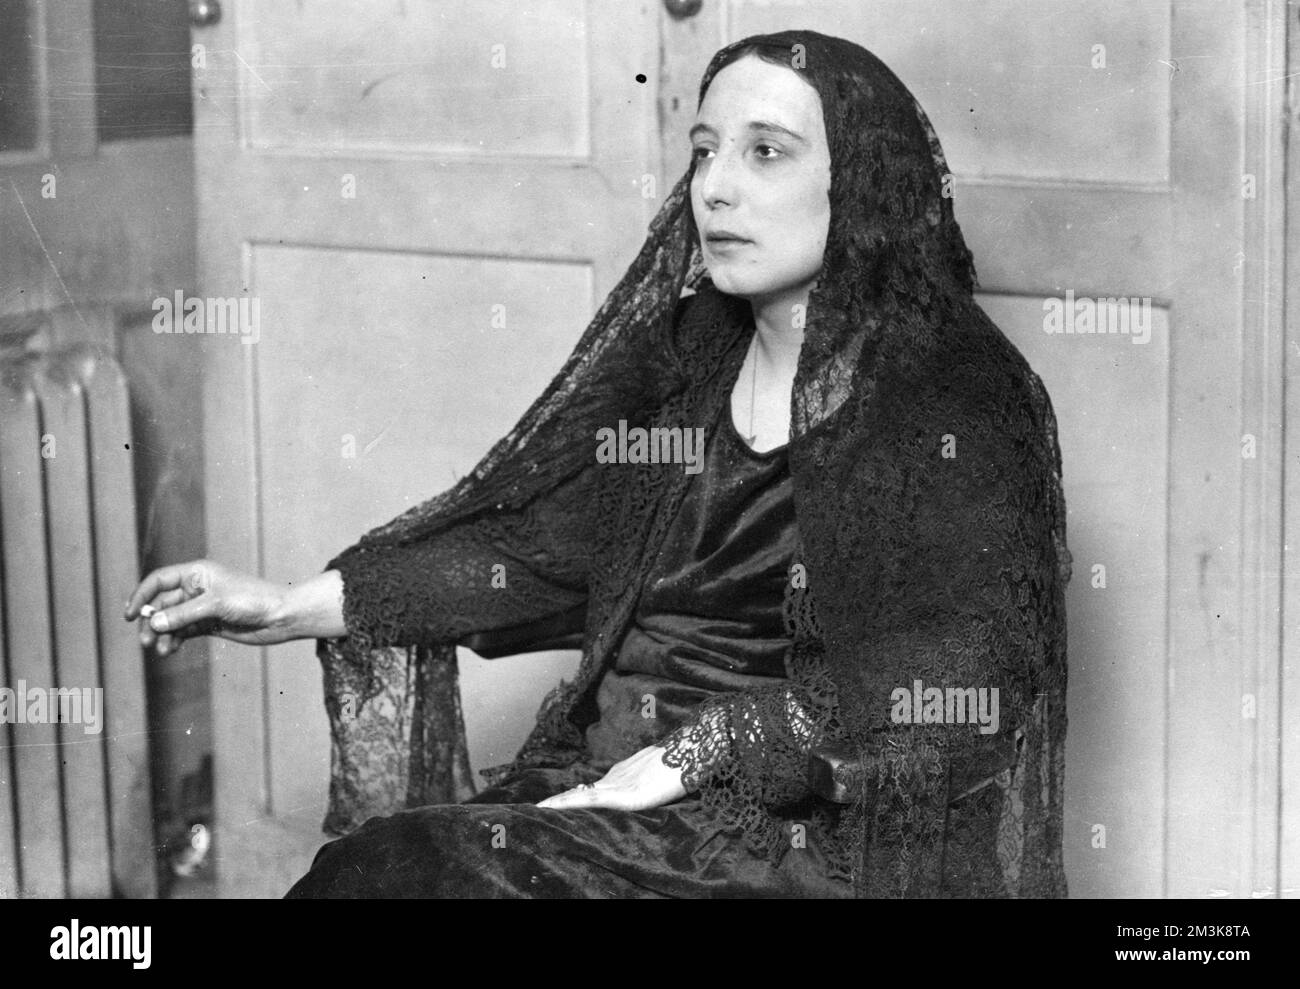 Il cantante e modello di cabaret Dolores, favorito dallo scultore Jacob Epstein, colpisce una posa tipicamente imperiosa e si gode una sigaretta. Data: c.1925 Foto Stock